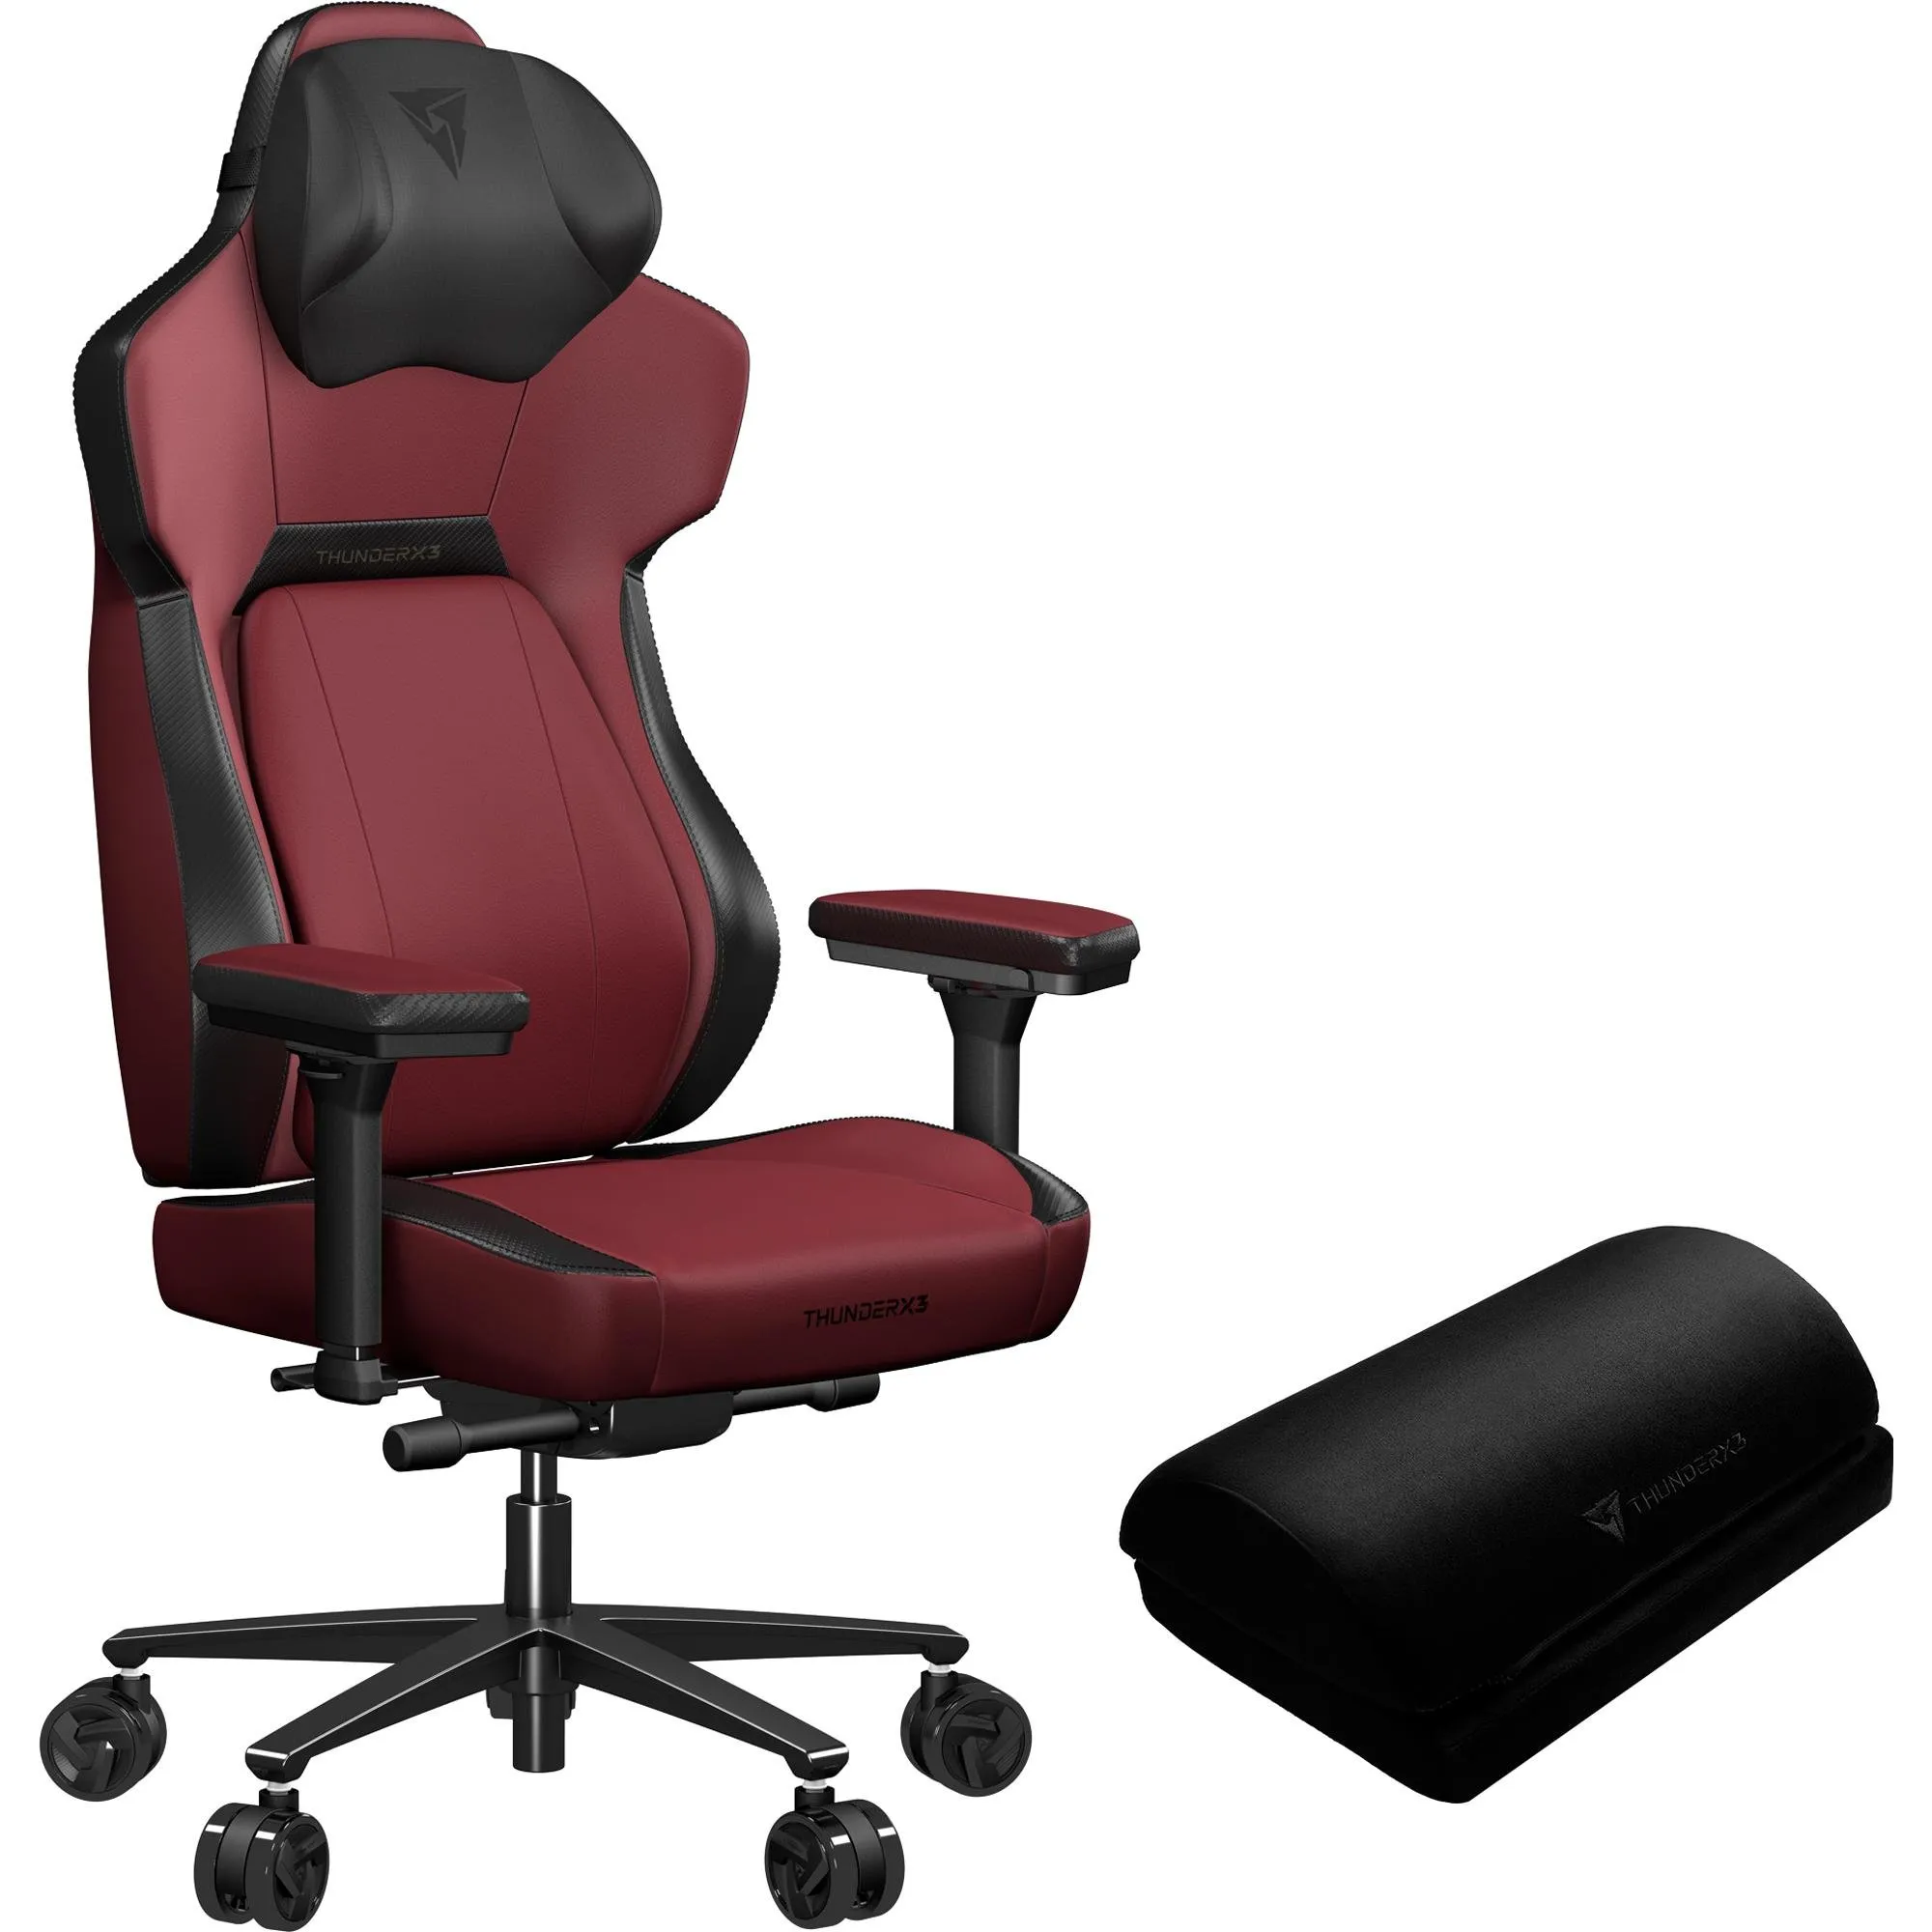 Cadeira Gamer ThunderX3 CORE Modern Vermelha por 3.099,90 à vista no boleto/pix ou parcele em até 12x sem juros. Compre na loja Thunderx3!